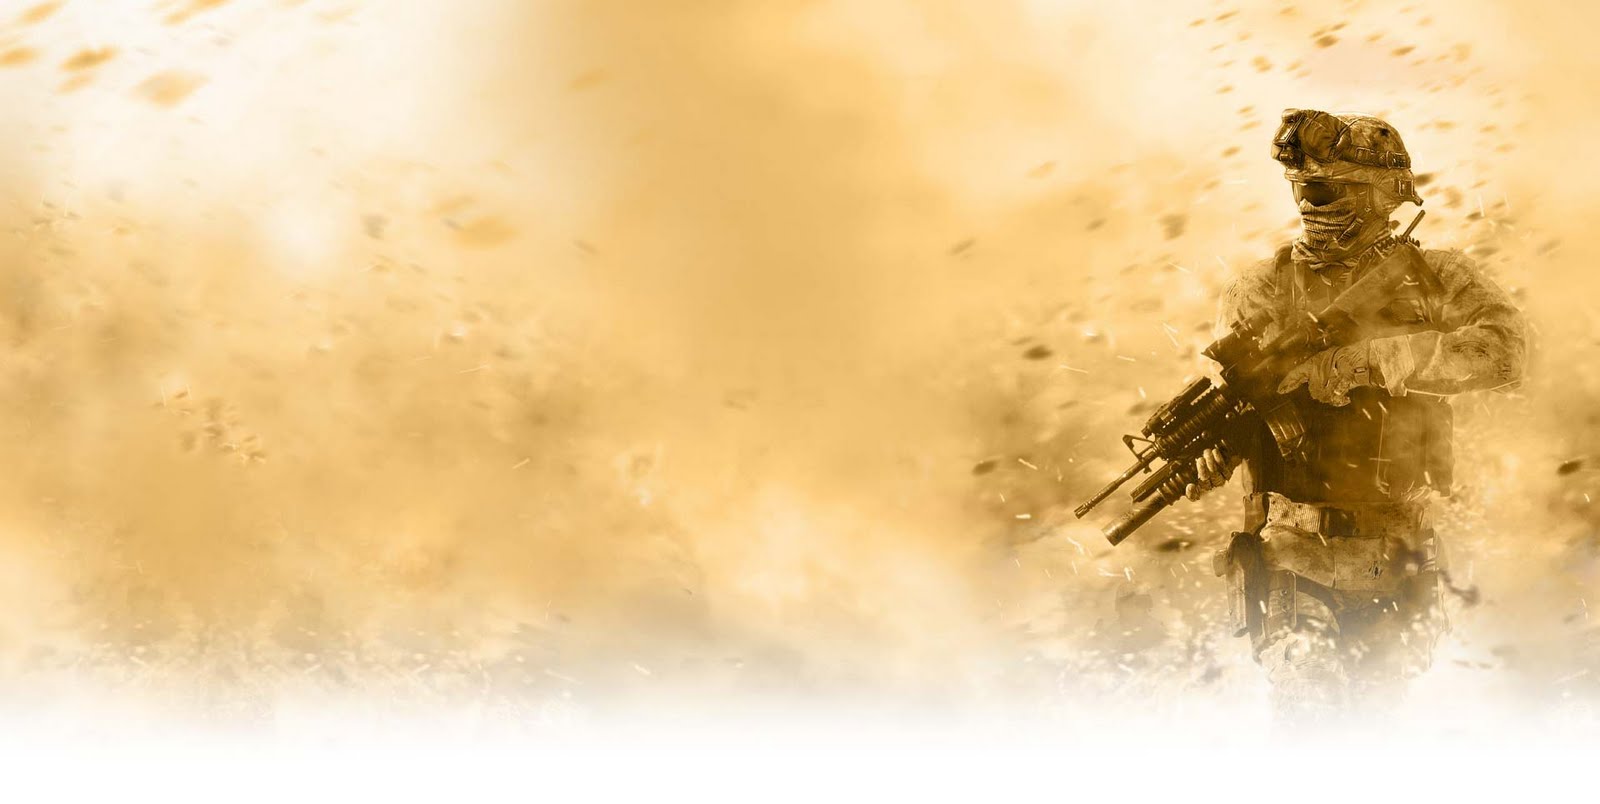  by LEAGUE OF FICTION Call of Duty Modern Warfare 2 Desktop Wallpaper 1600x804